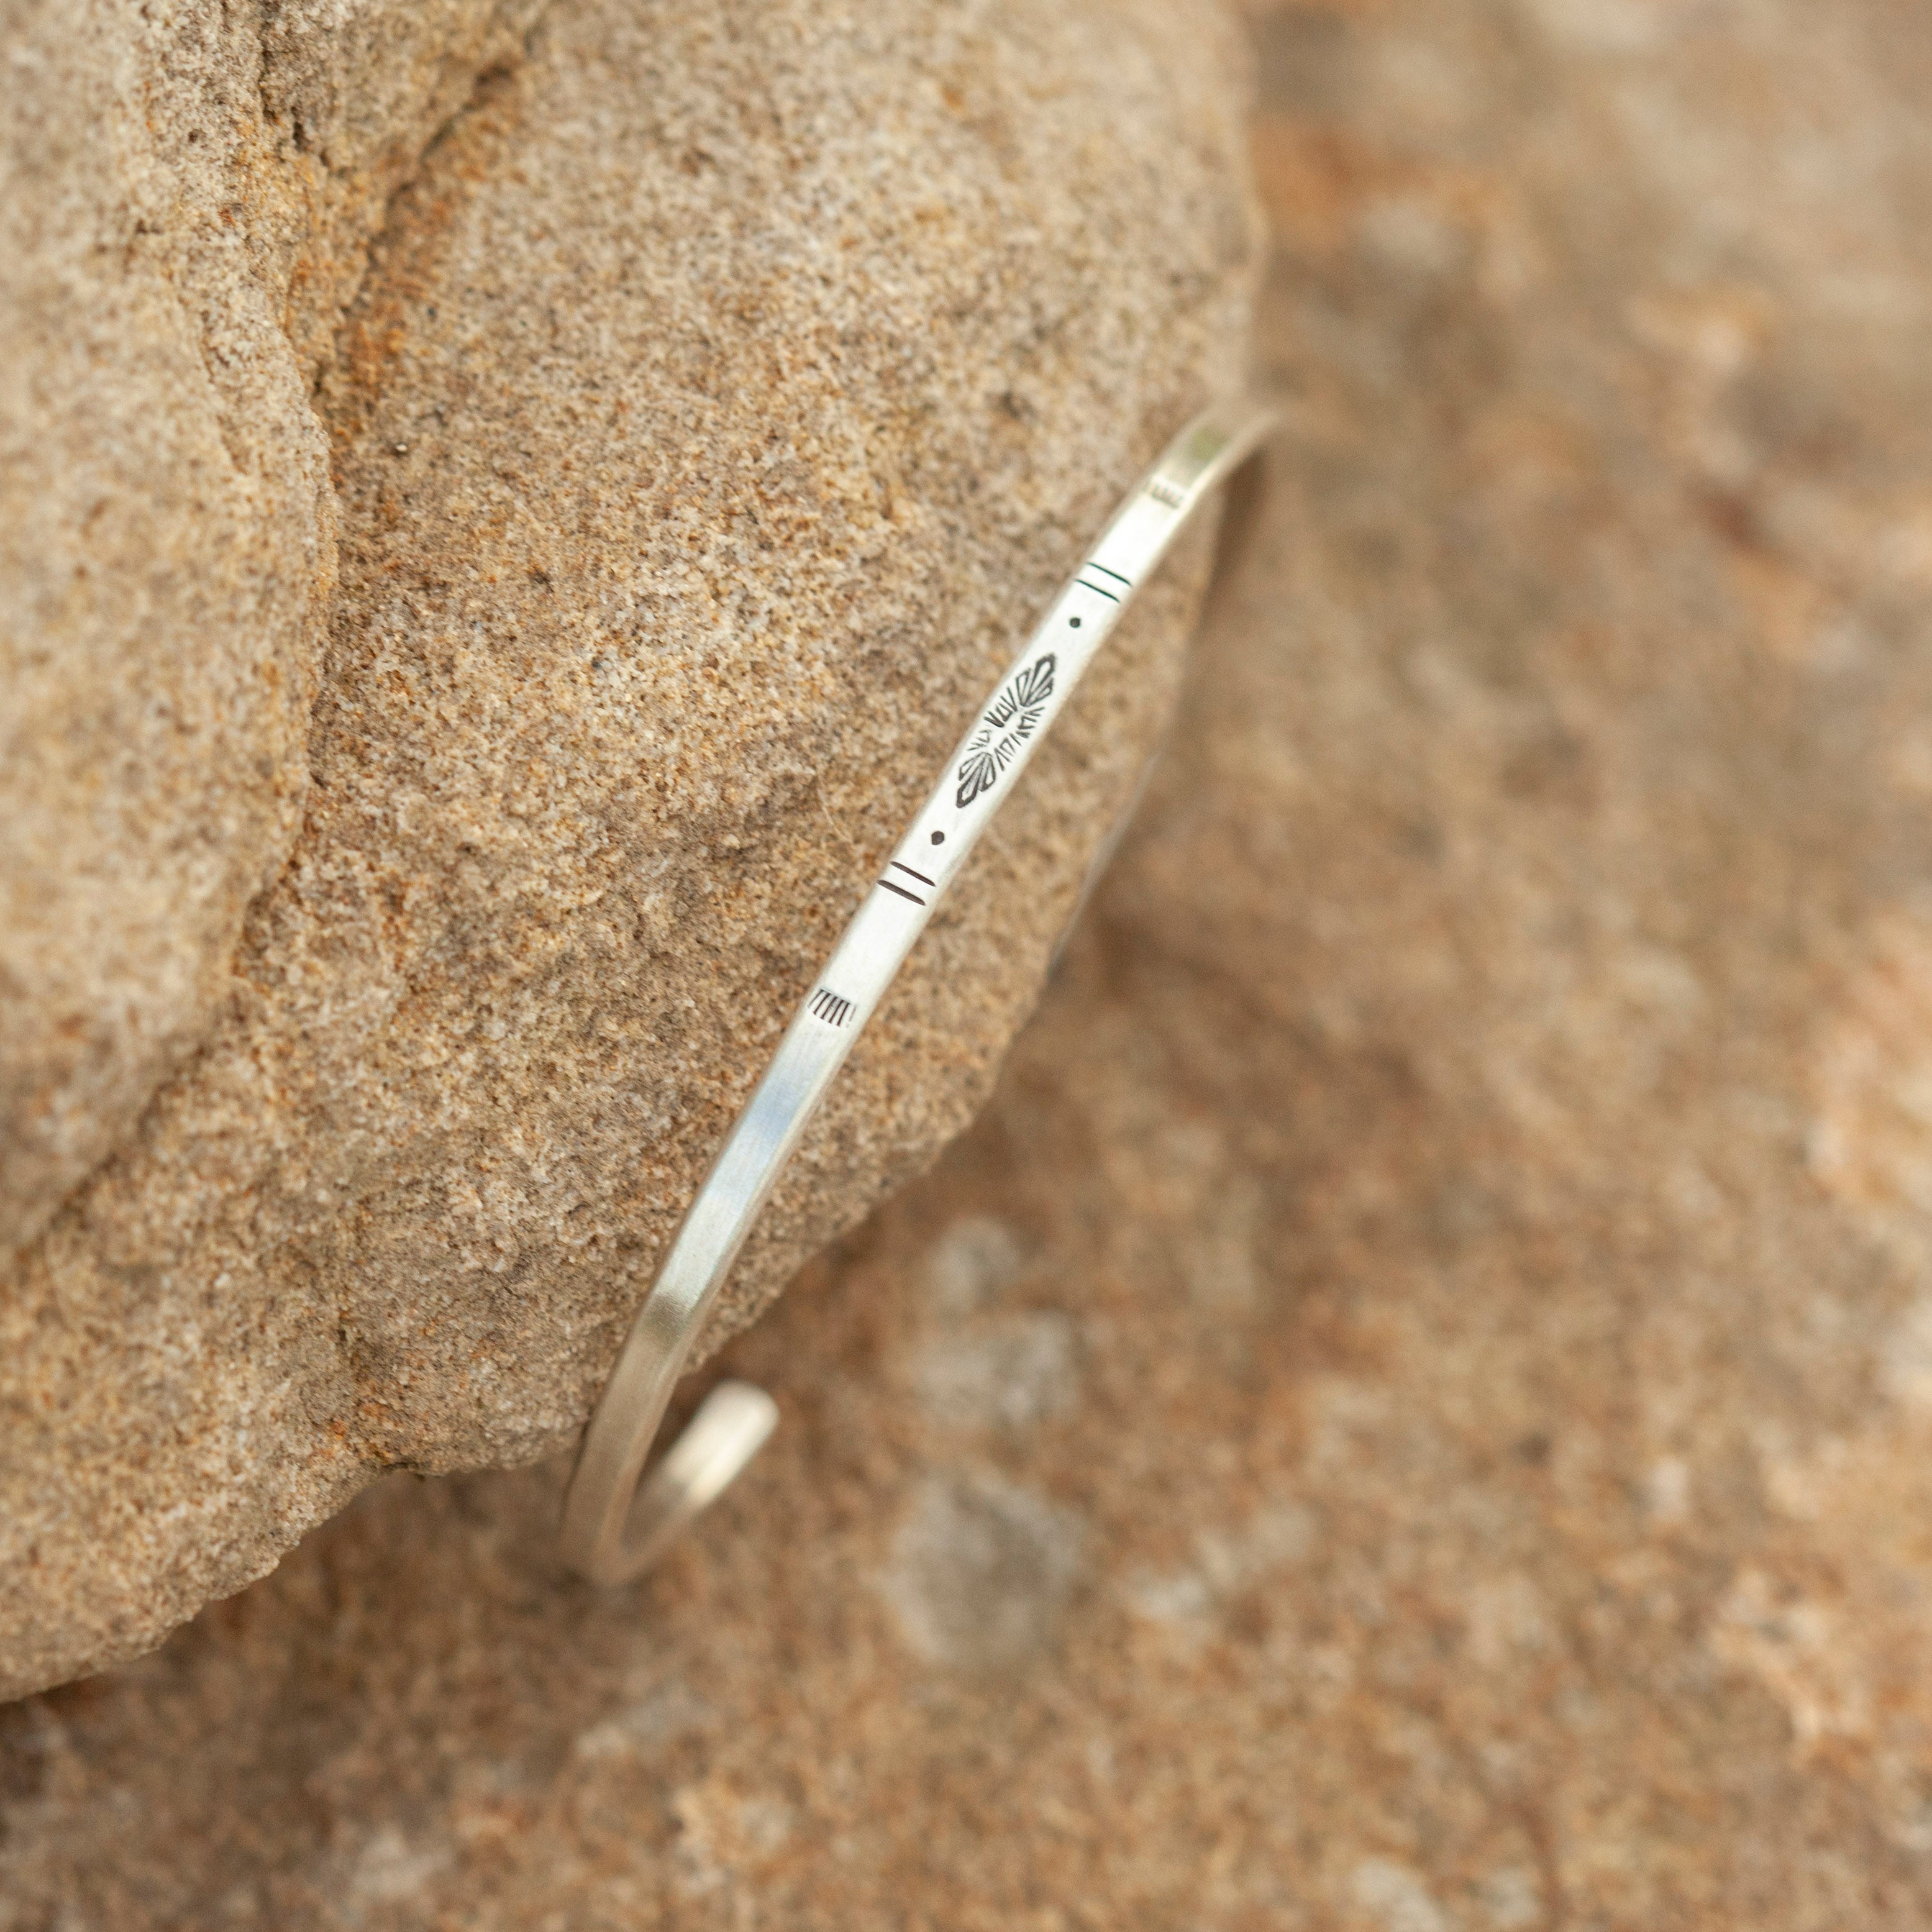 OOAK Ethnic bracelet in silver #9 • size 5,75cm (ready-to-ship)